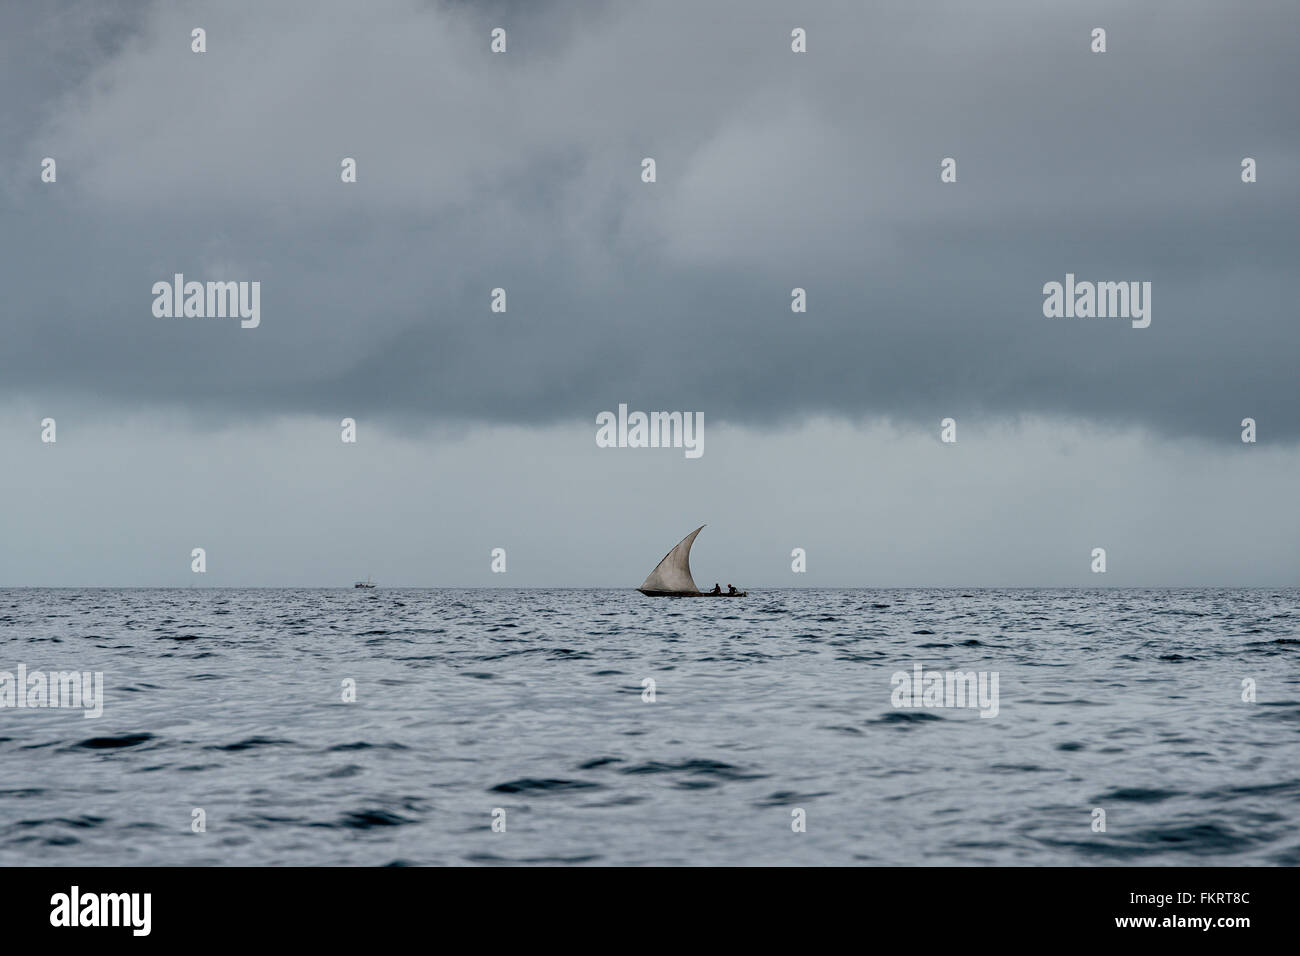 Zanzibar ha un sacco di dhow (stile tradizionale imbarcazione a vela) a causa della sua storia come una parte del Sultanato di Oman. Foto Stock